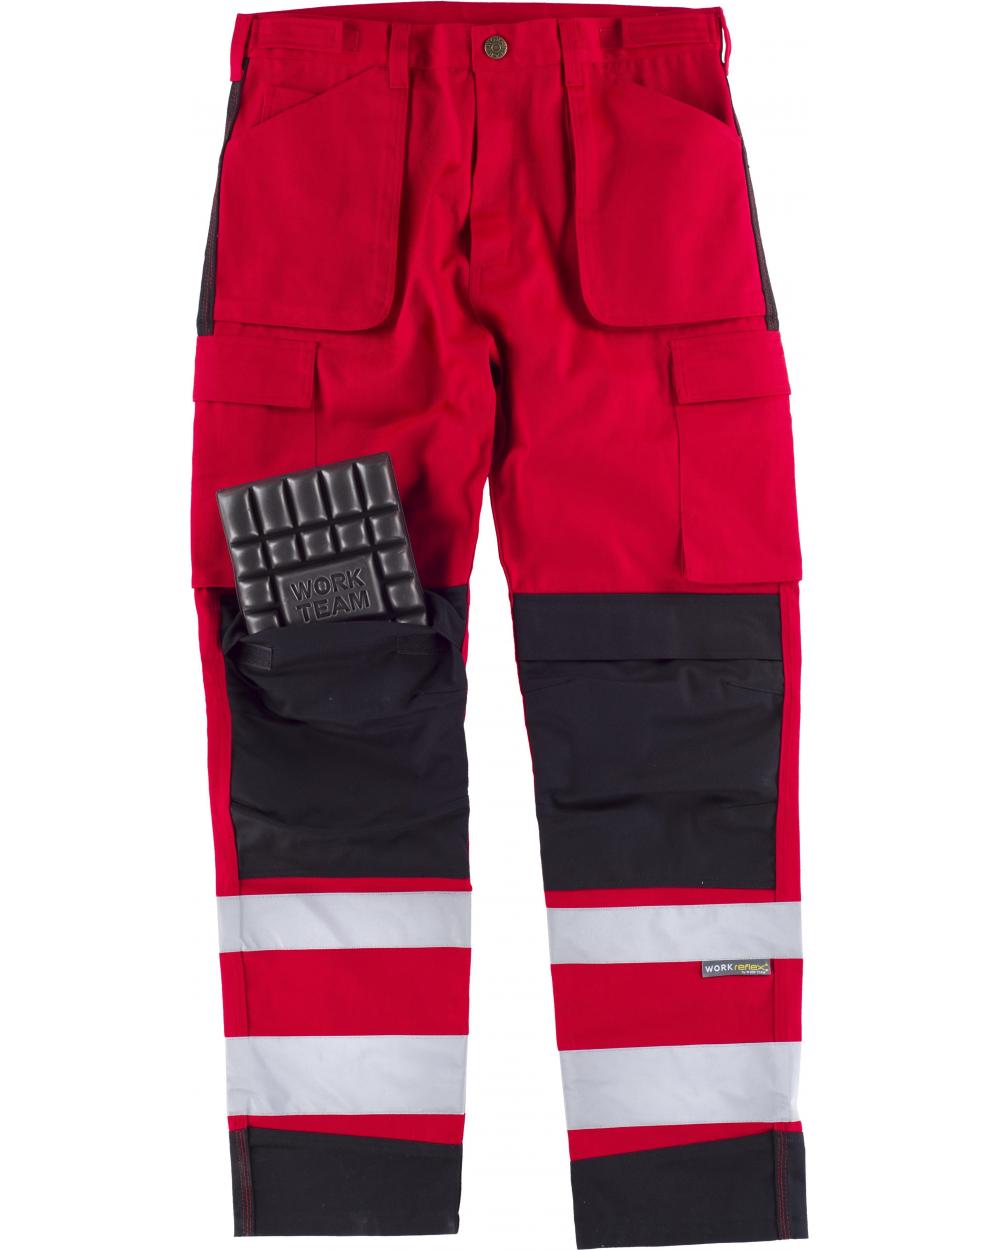 Comprar Pantalon multibolsillos y rodilleras C2913 Rojo+Negro workteam delante